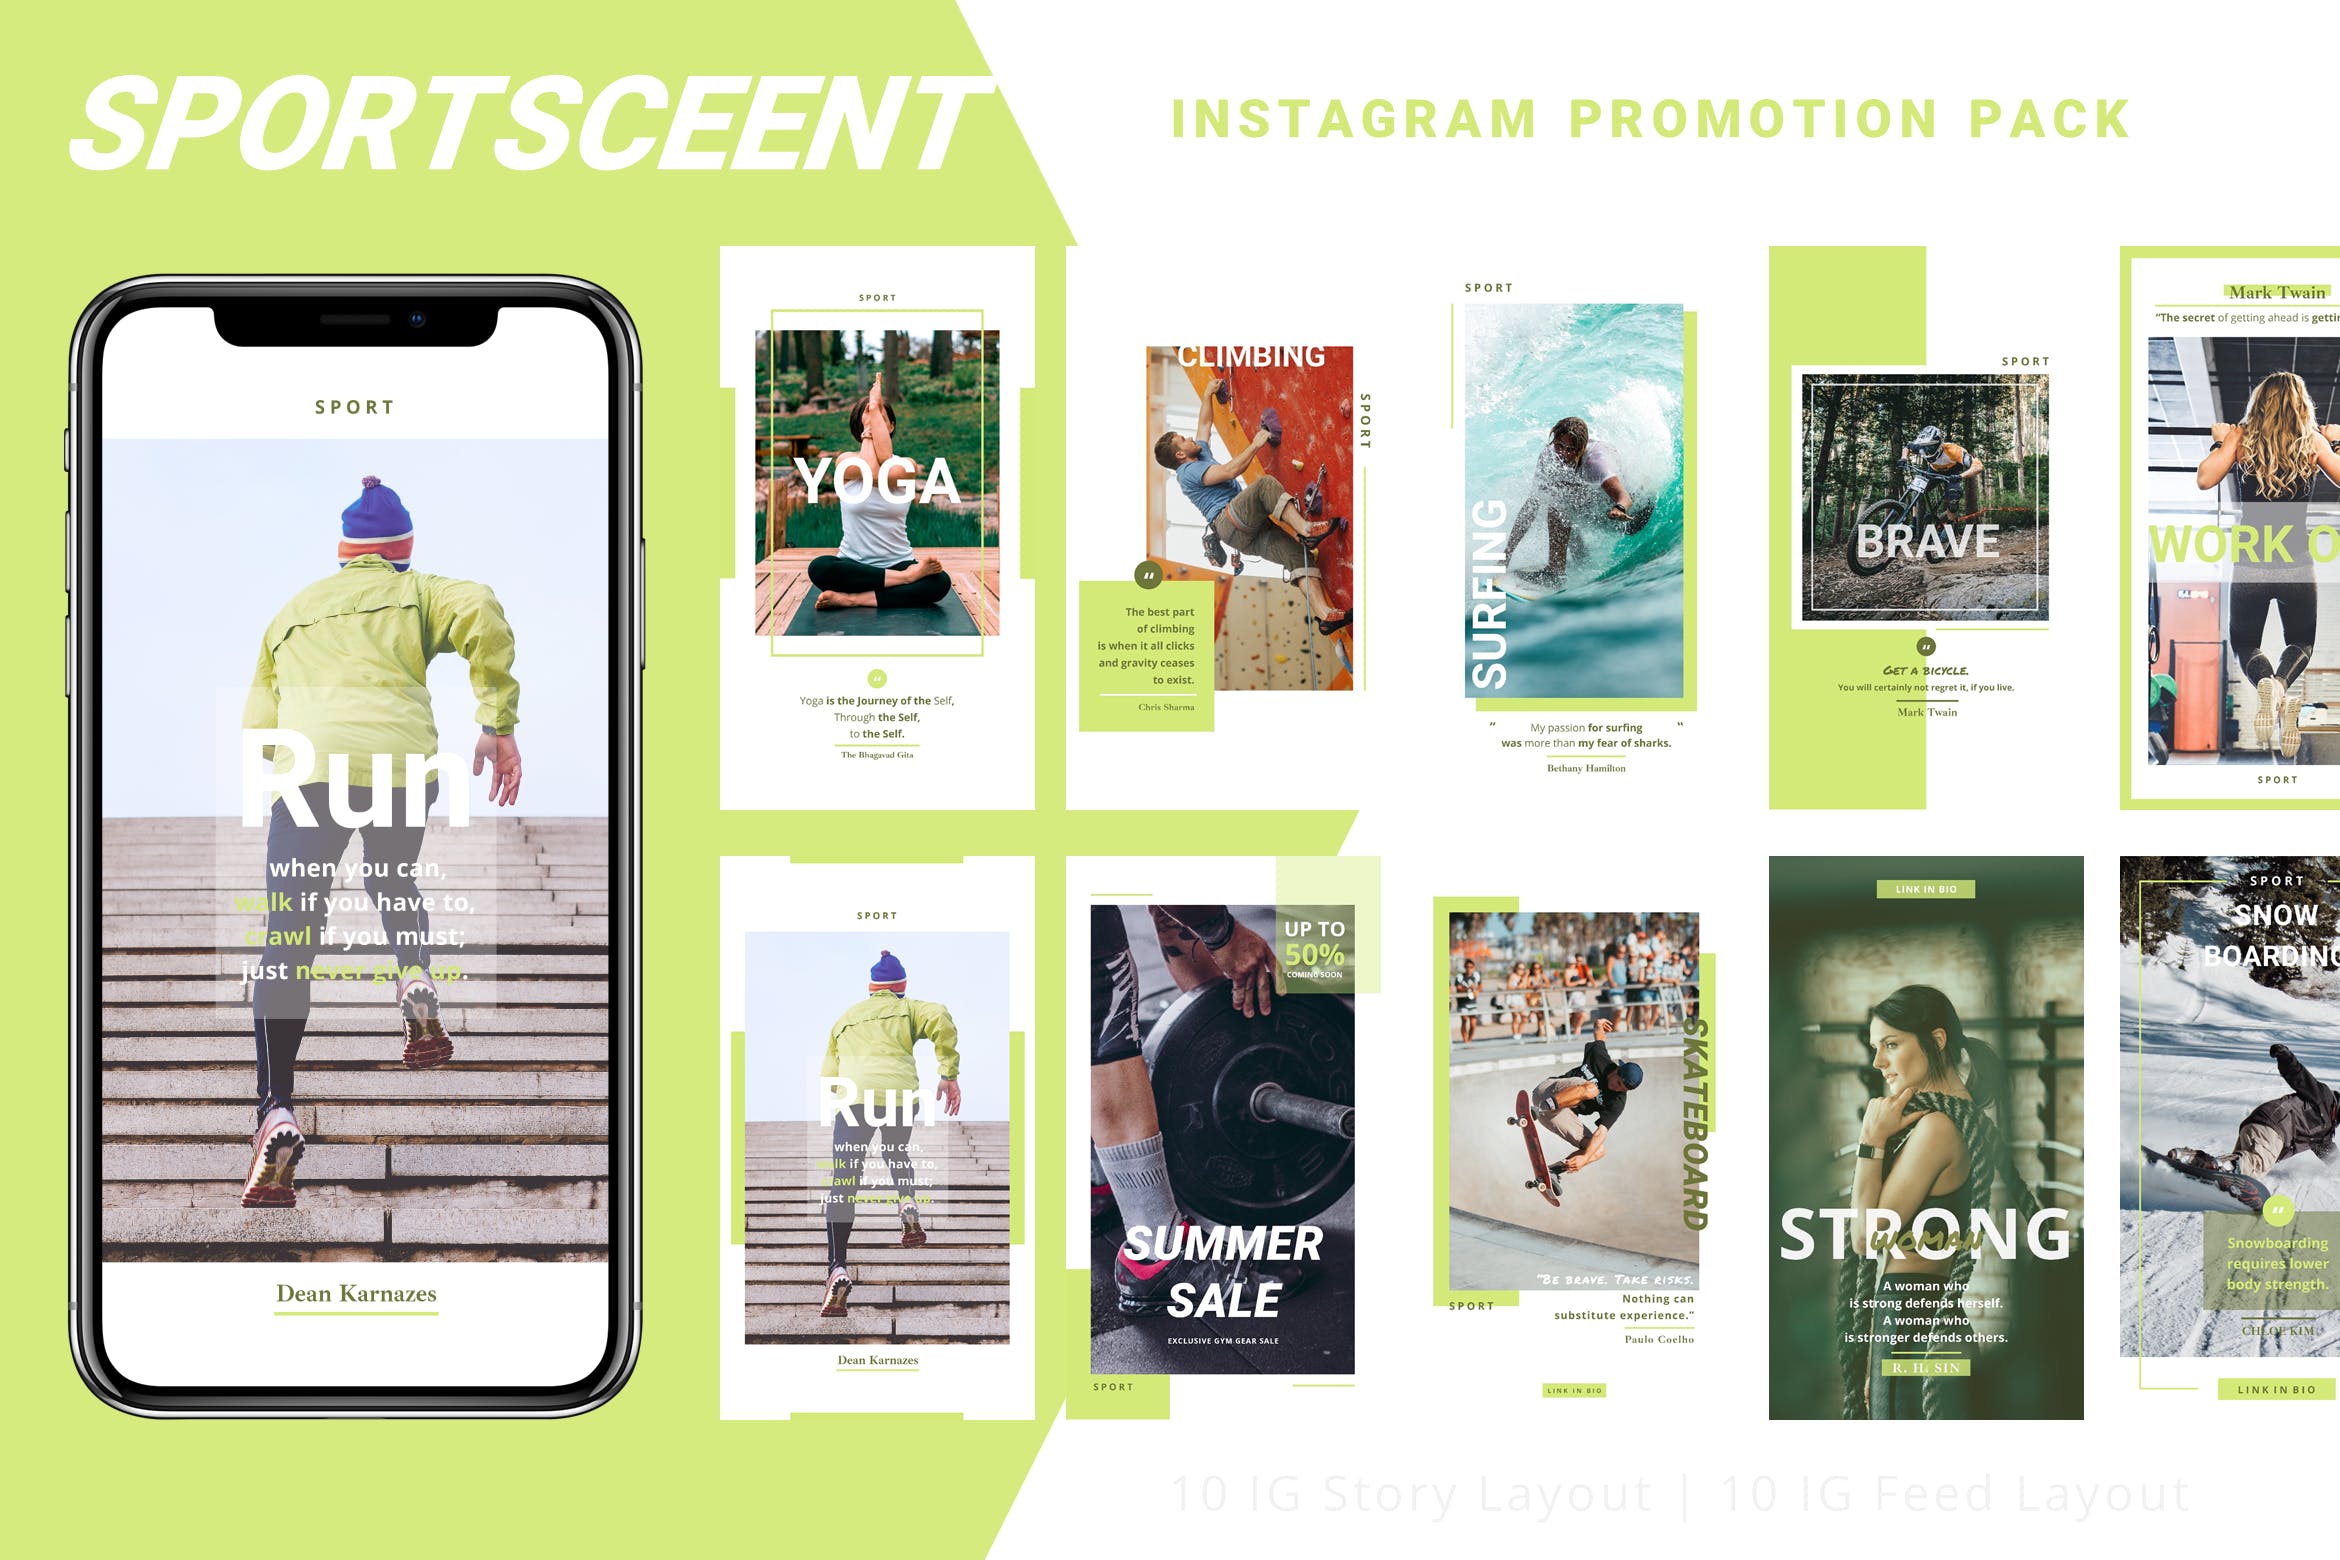 体育运动主题Instagram品牌故事设计模板蚂蚁素材精选 Sportsceent – Instagram Story Pack插图